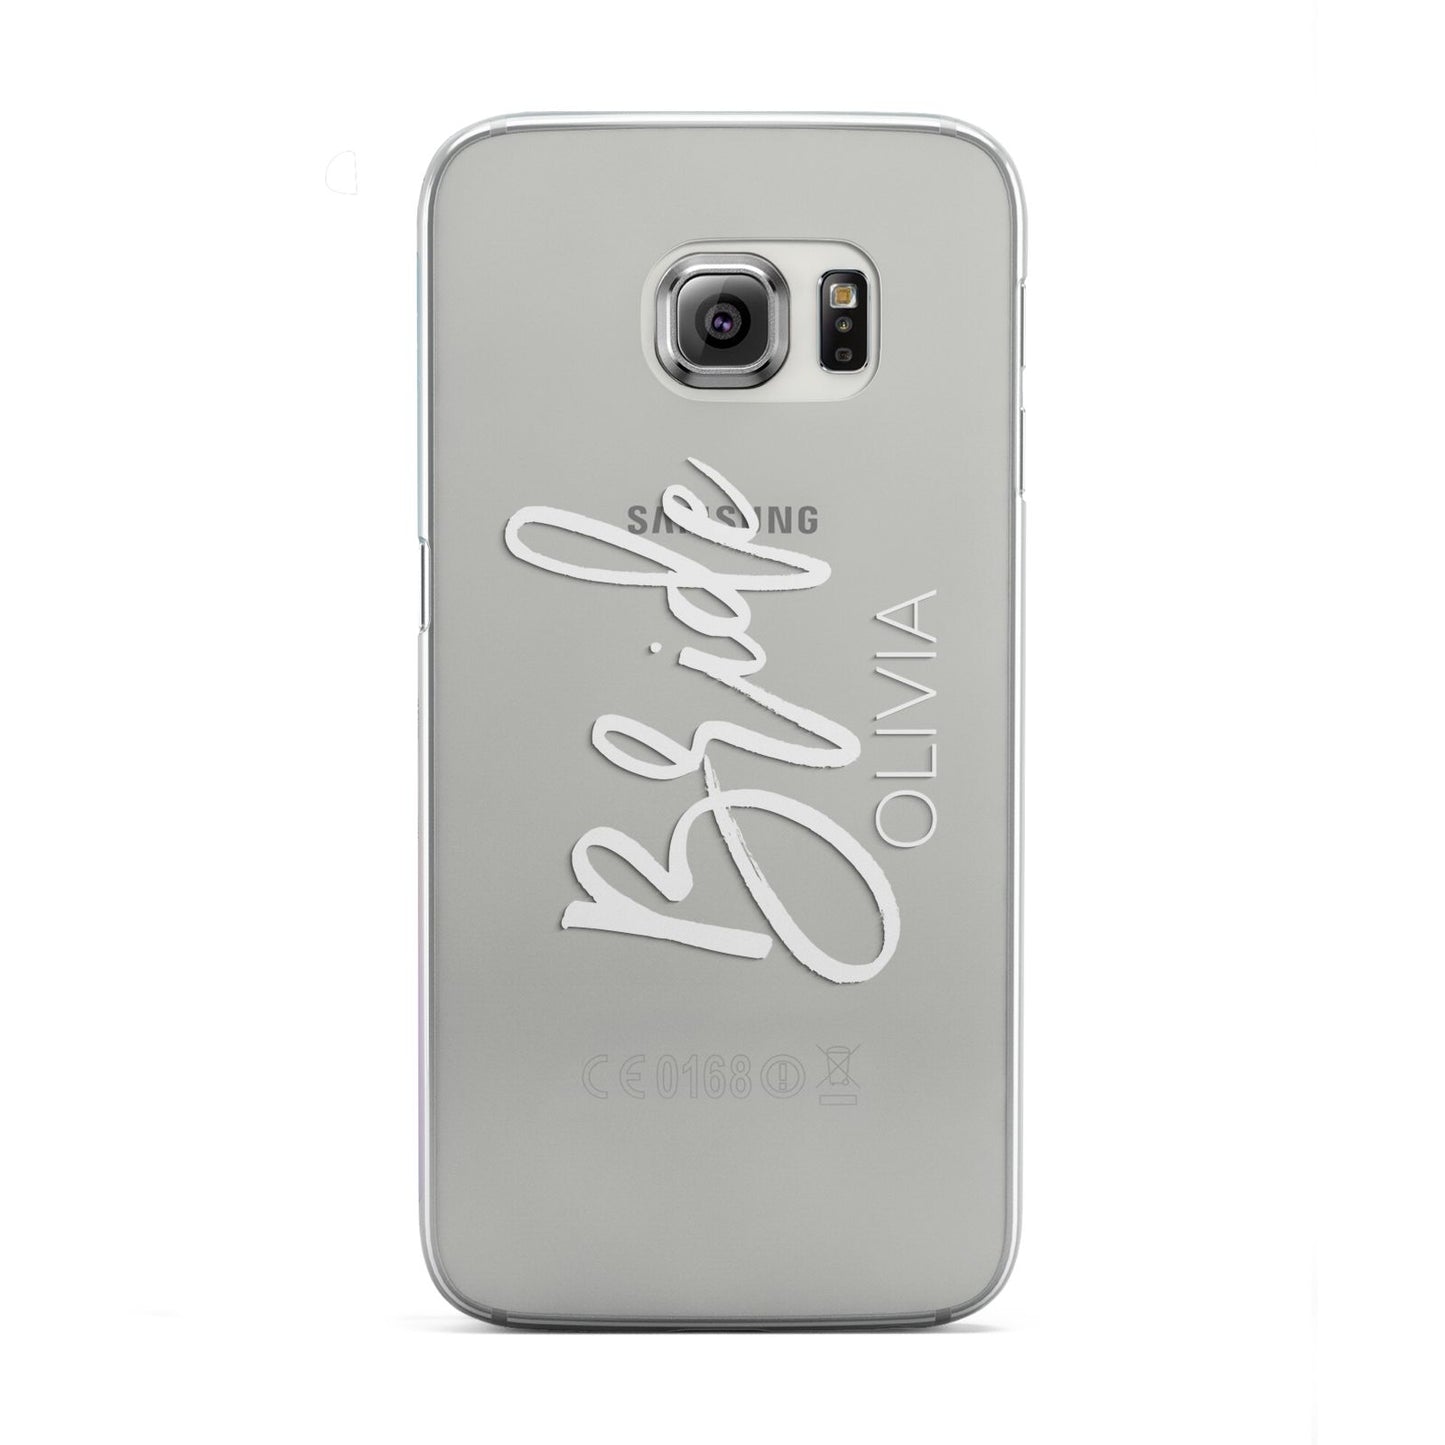 Personalised Bride Samsung Galaxy S6 Edge Case